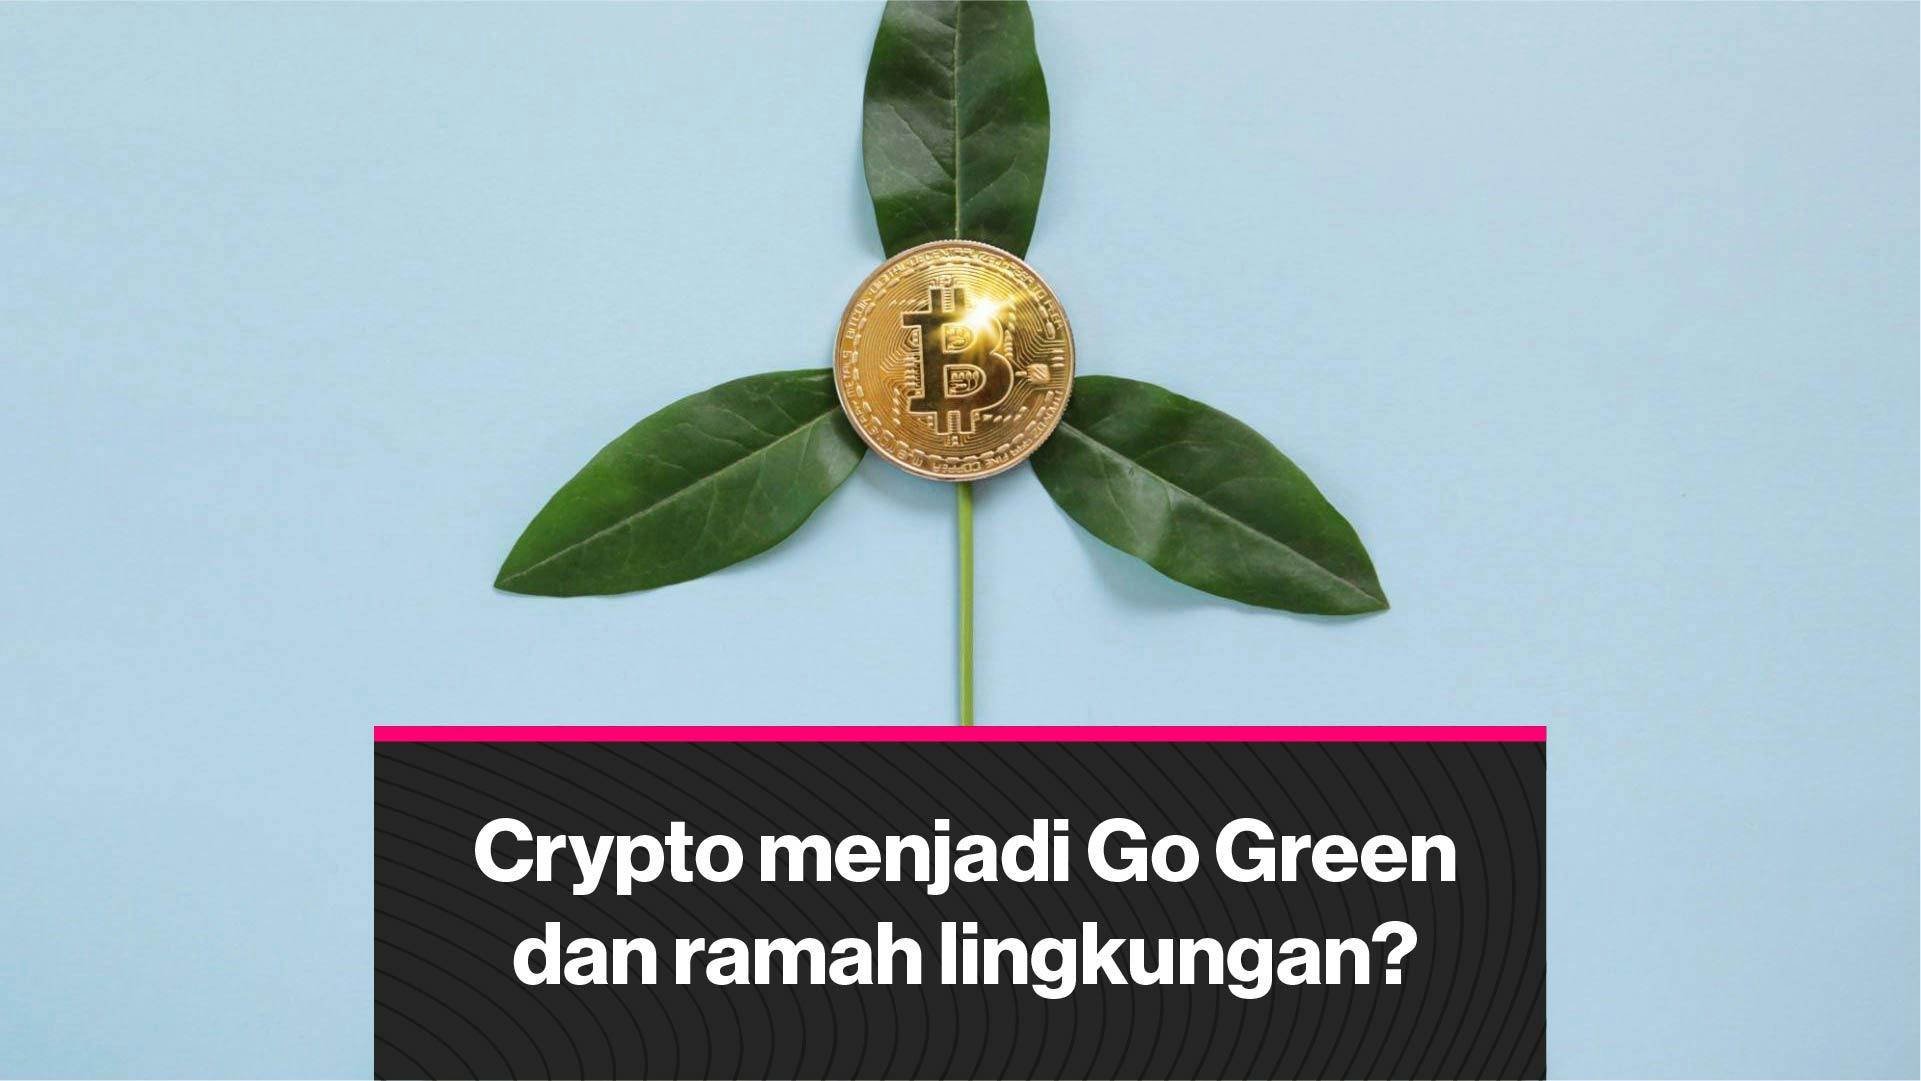 Dapatkah Crypto Go Green? dan Bagaimana cara berinvestasi di crypto yang mementingkan lingkungan? (Coindesk Indonesia)